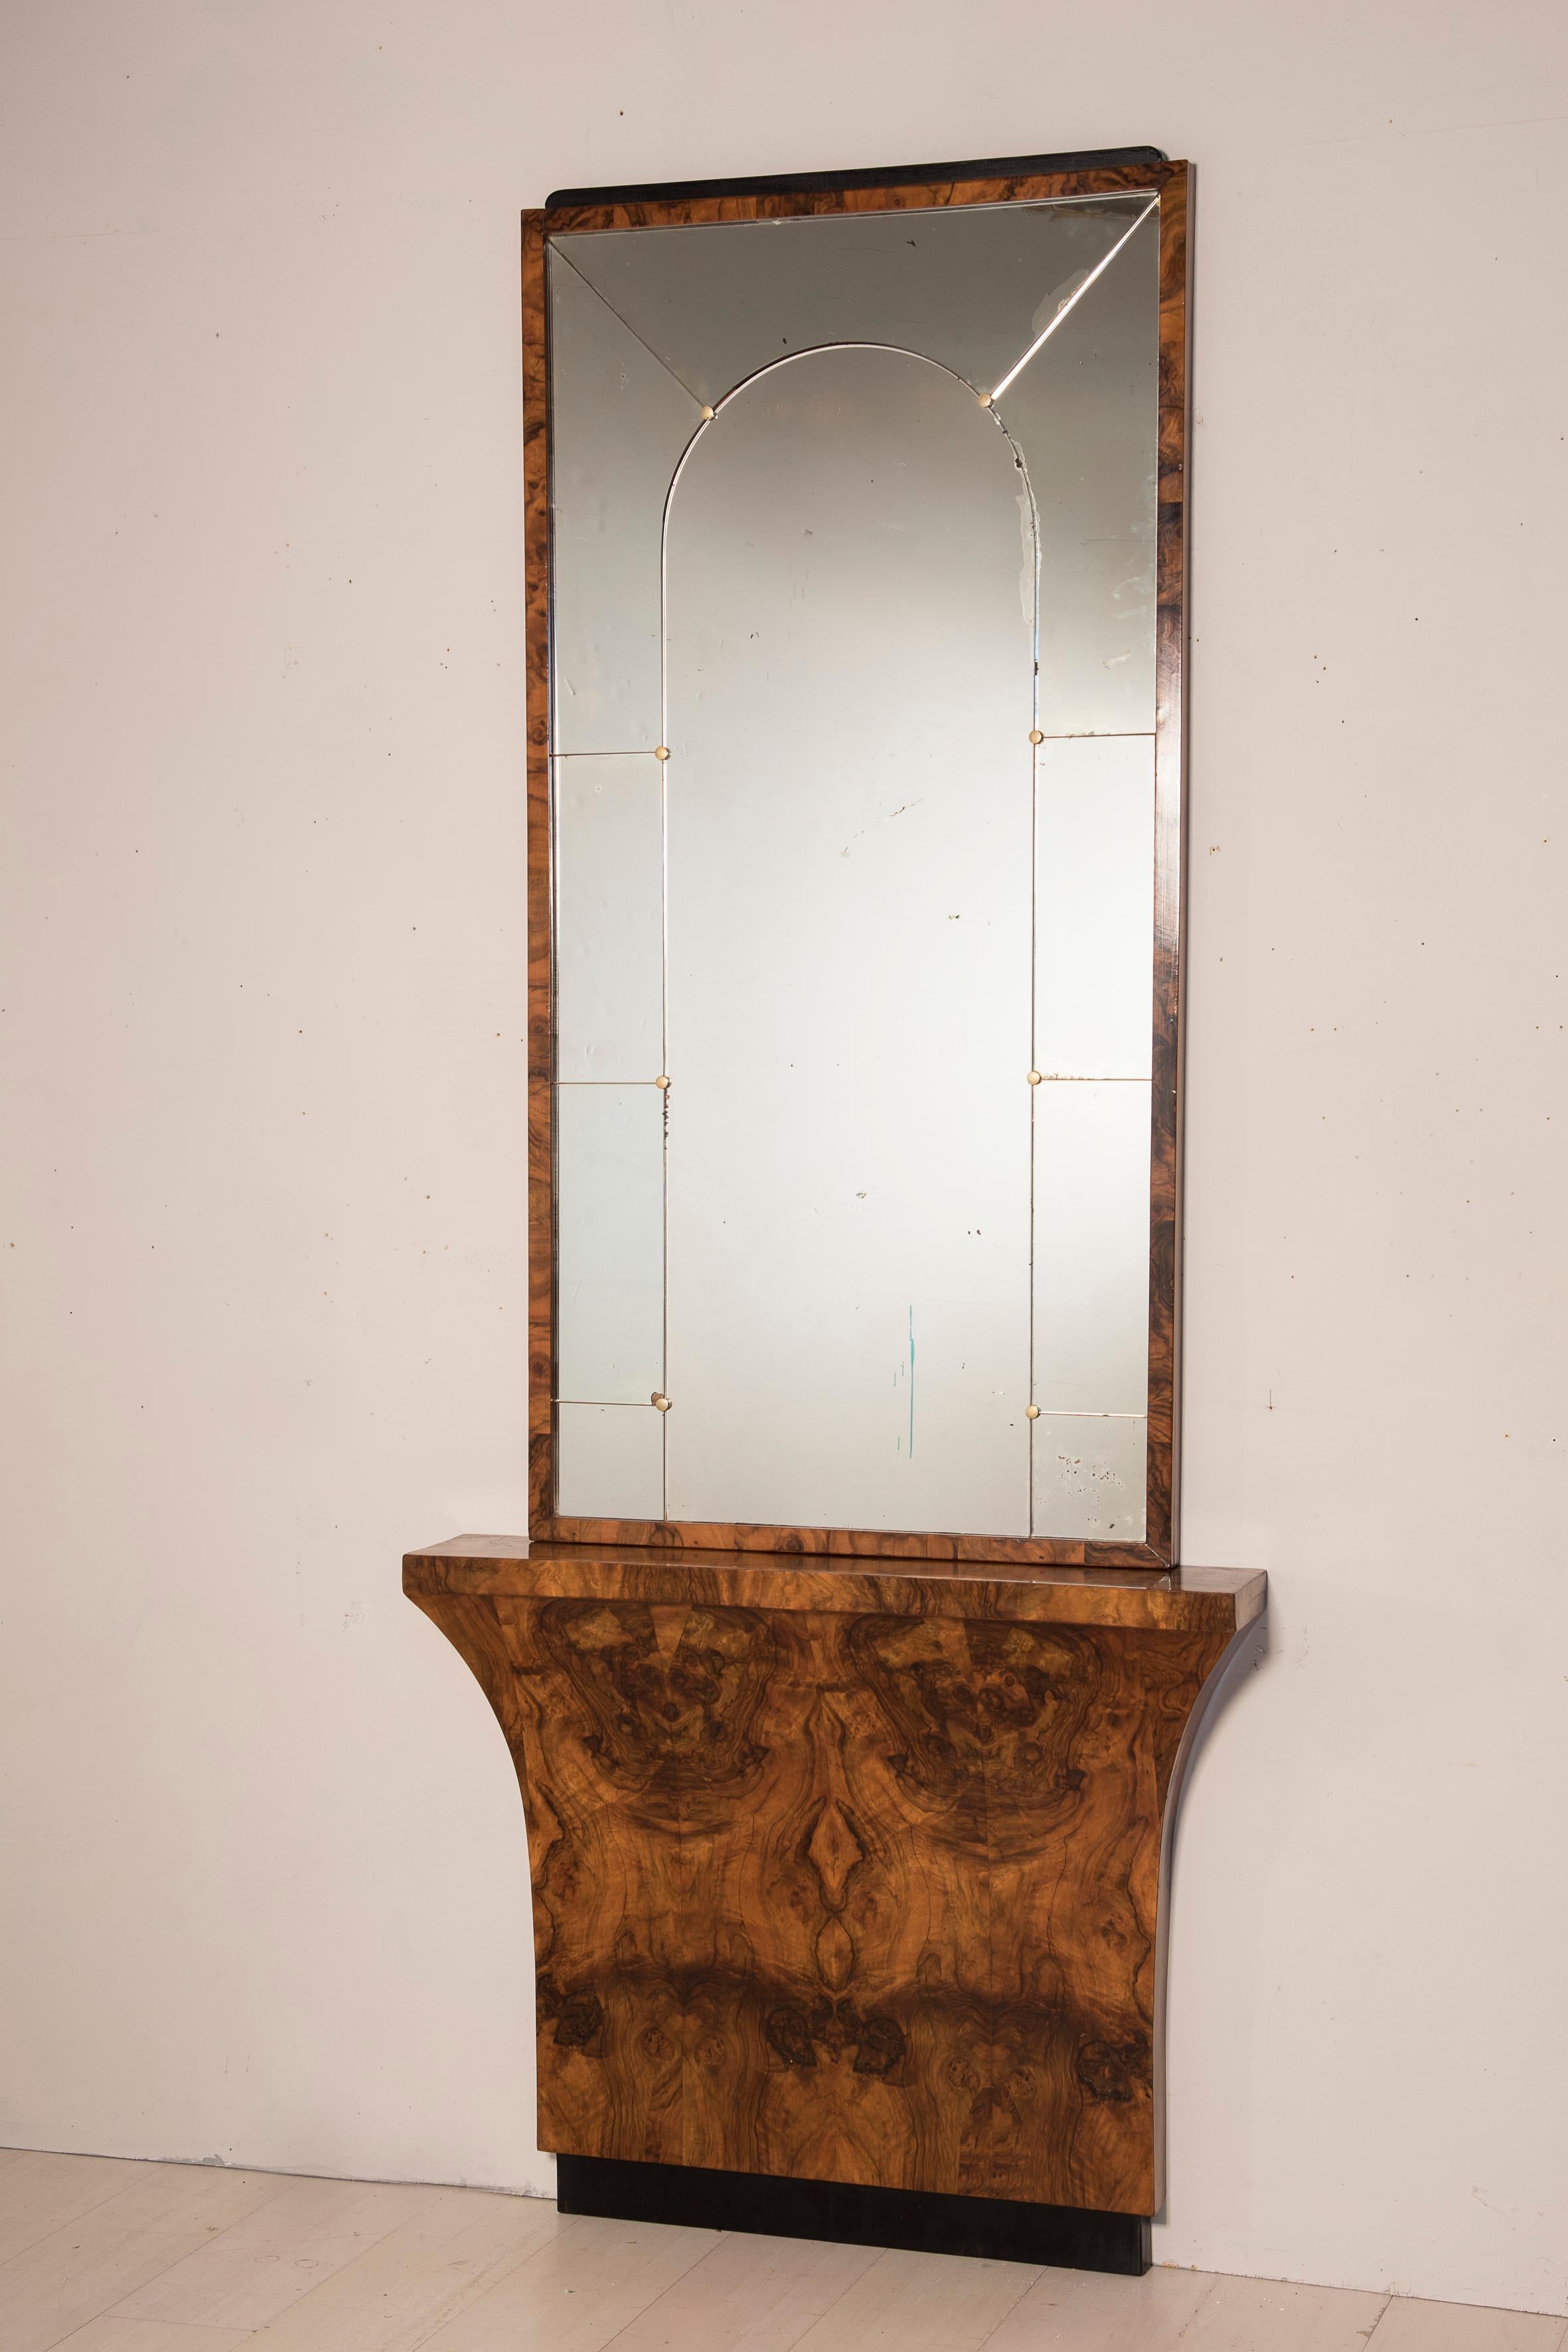 Art Deco 1930er Jahre furnierter Konsolentisch mit Spiegel. Der Sockel des Konsolentisches ist mit einer großen Furnierflamme versehen. Der Spiegel ist mit Messingnägeln getäfelt.
Größe des Sockels 100 x 18 h 82 cm - Größe des Spiegels 157 x 80